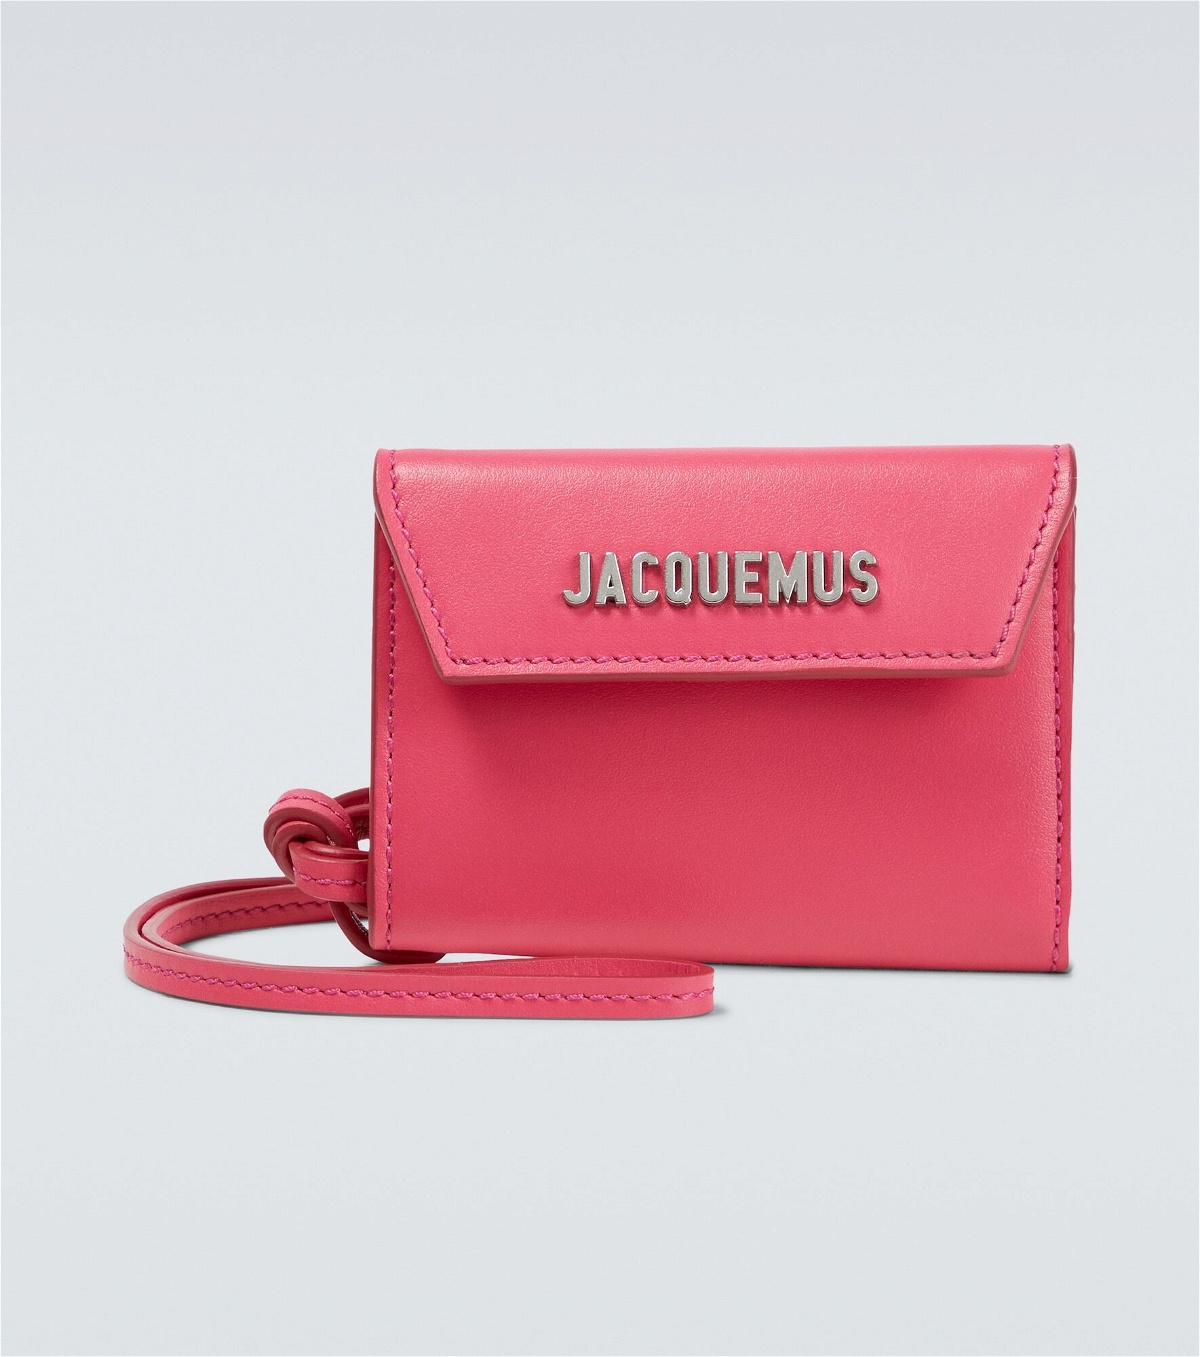 Le Porte Azur Jacquemus leather bag